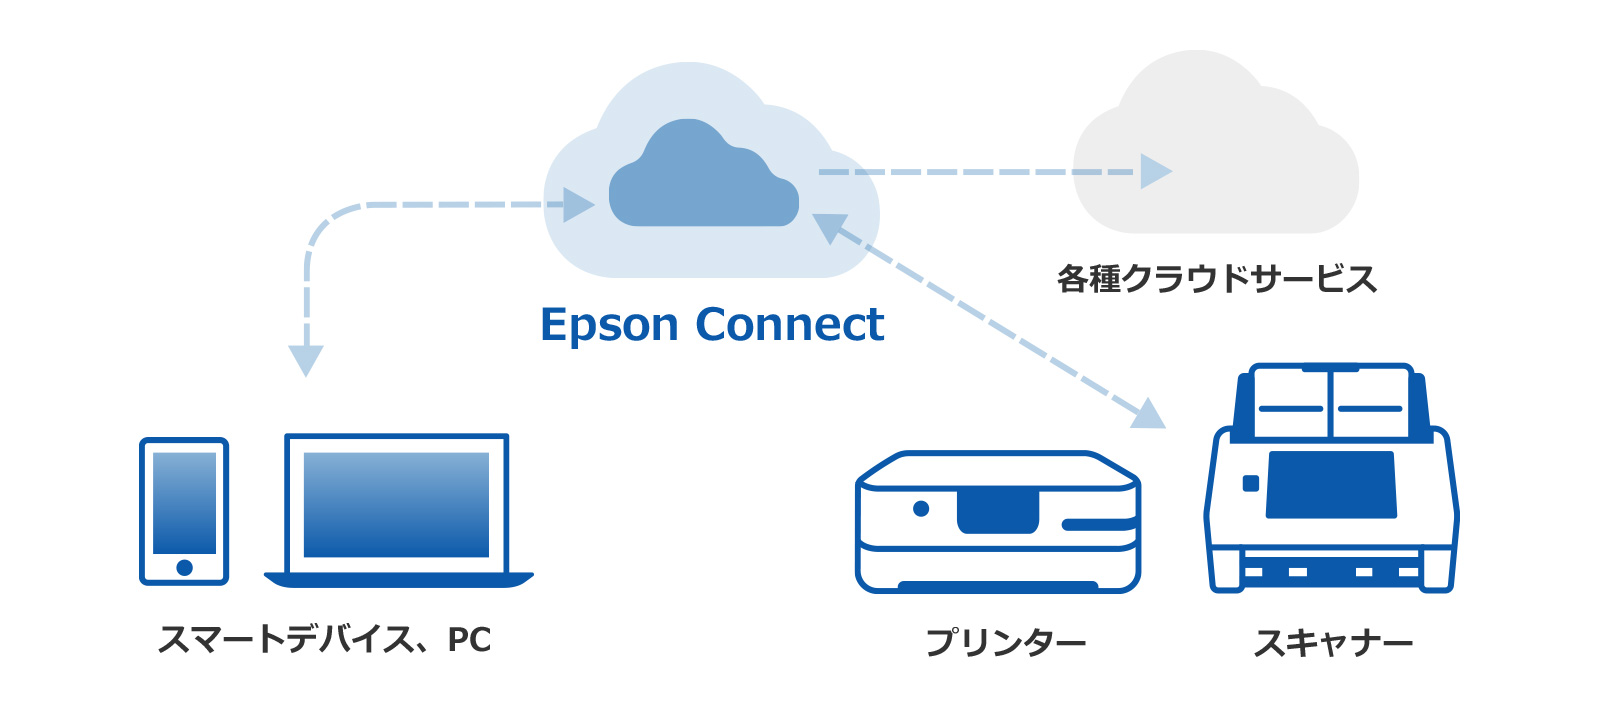 Epson Connectについて